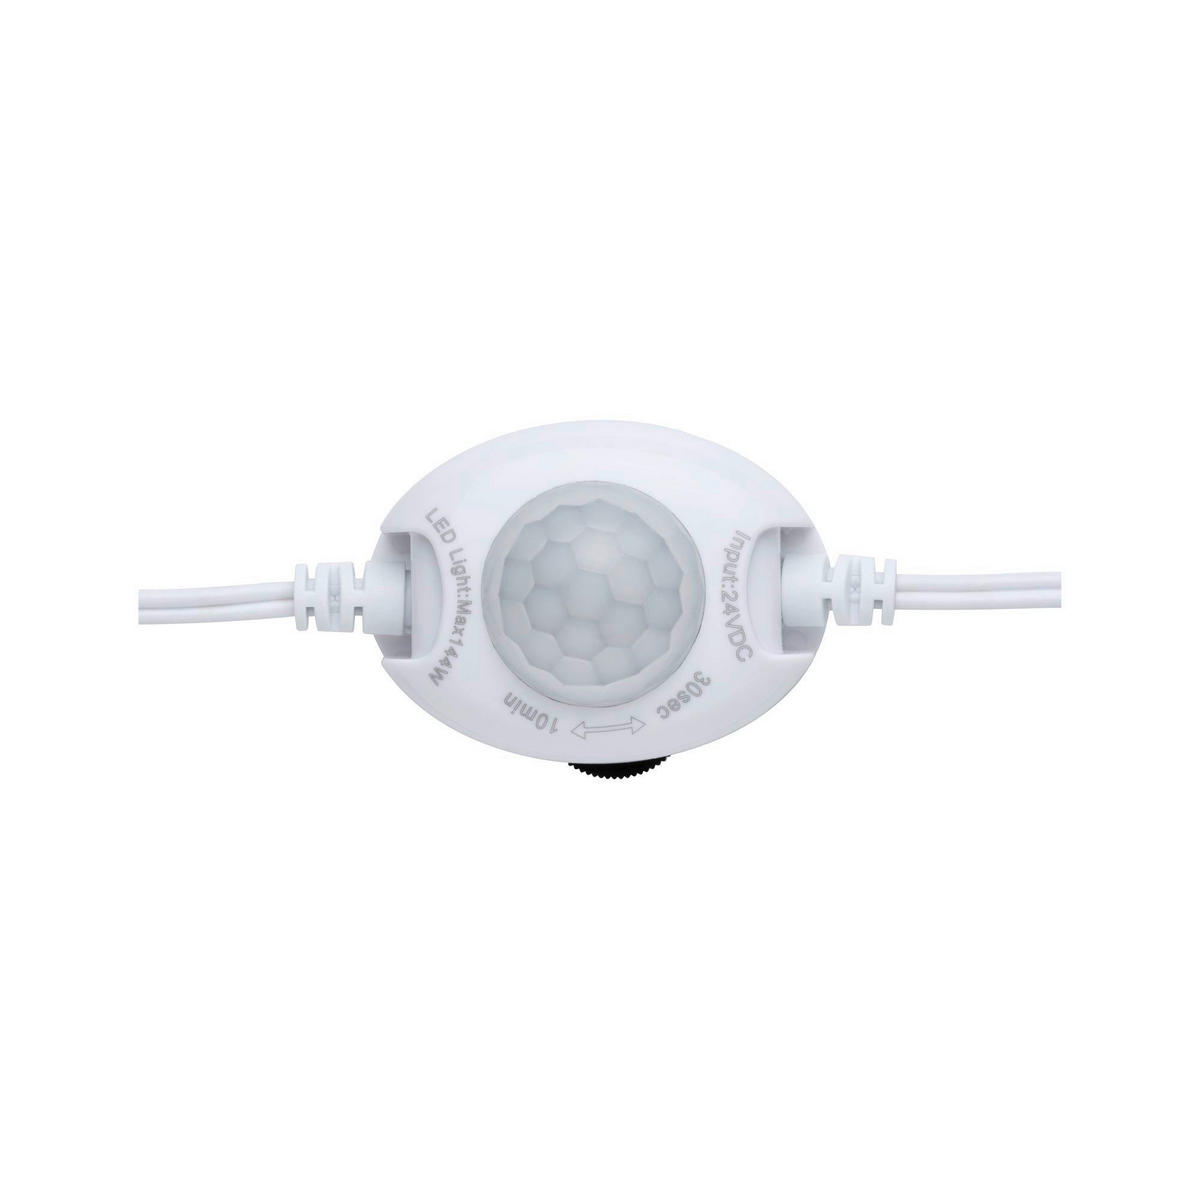 LED-STRIP  - Weiß, Basics, Kunststoff (4,8/3,3cm) - Paulmann